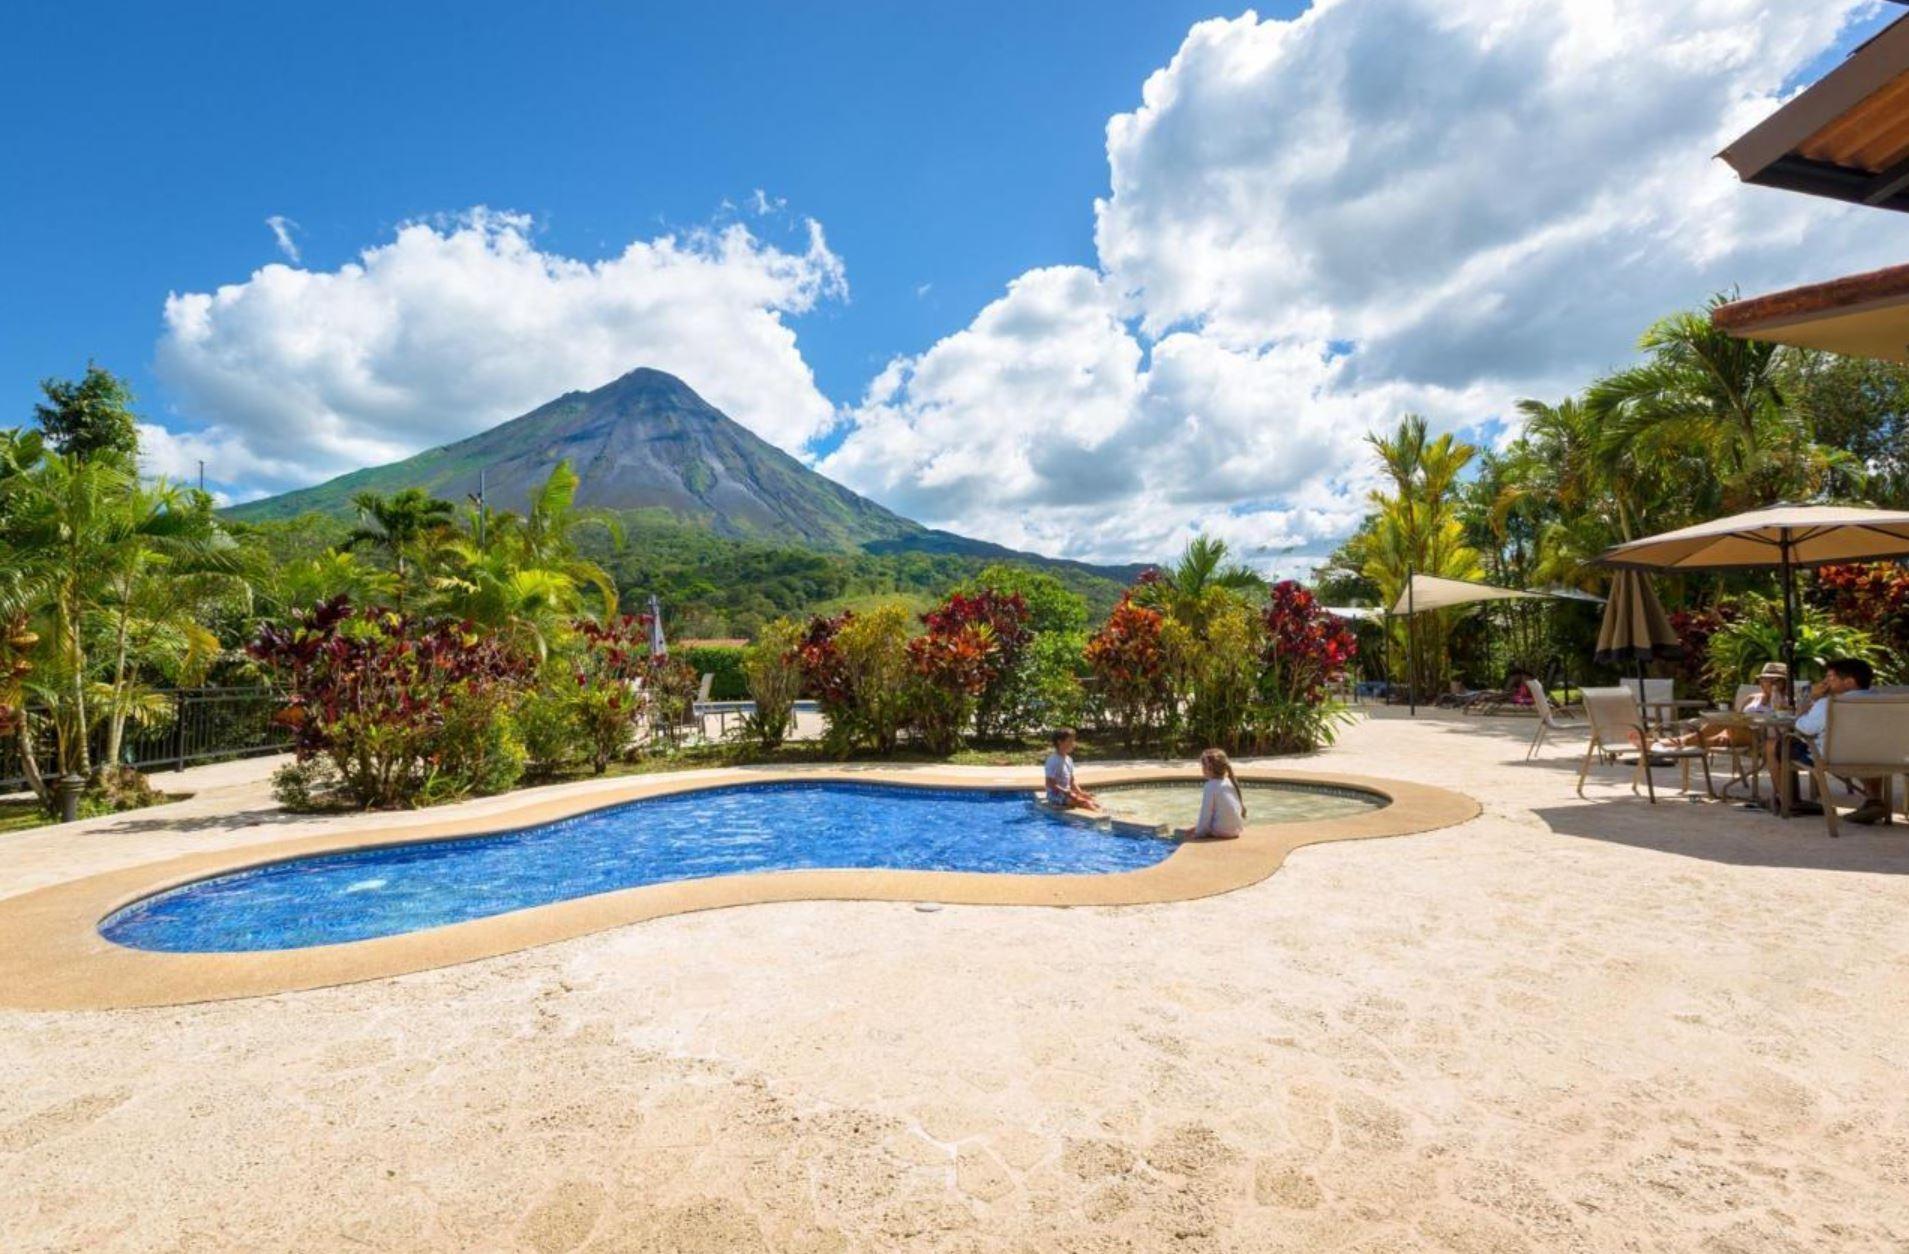 Kioro Hotel at Arenal Volcano Costa Rica